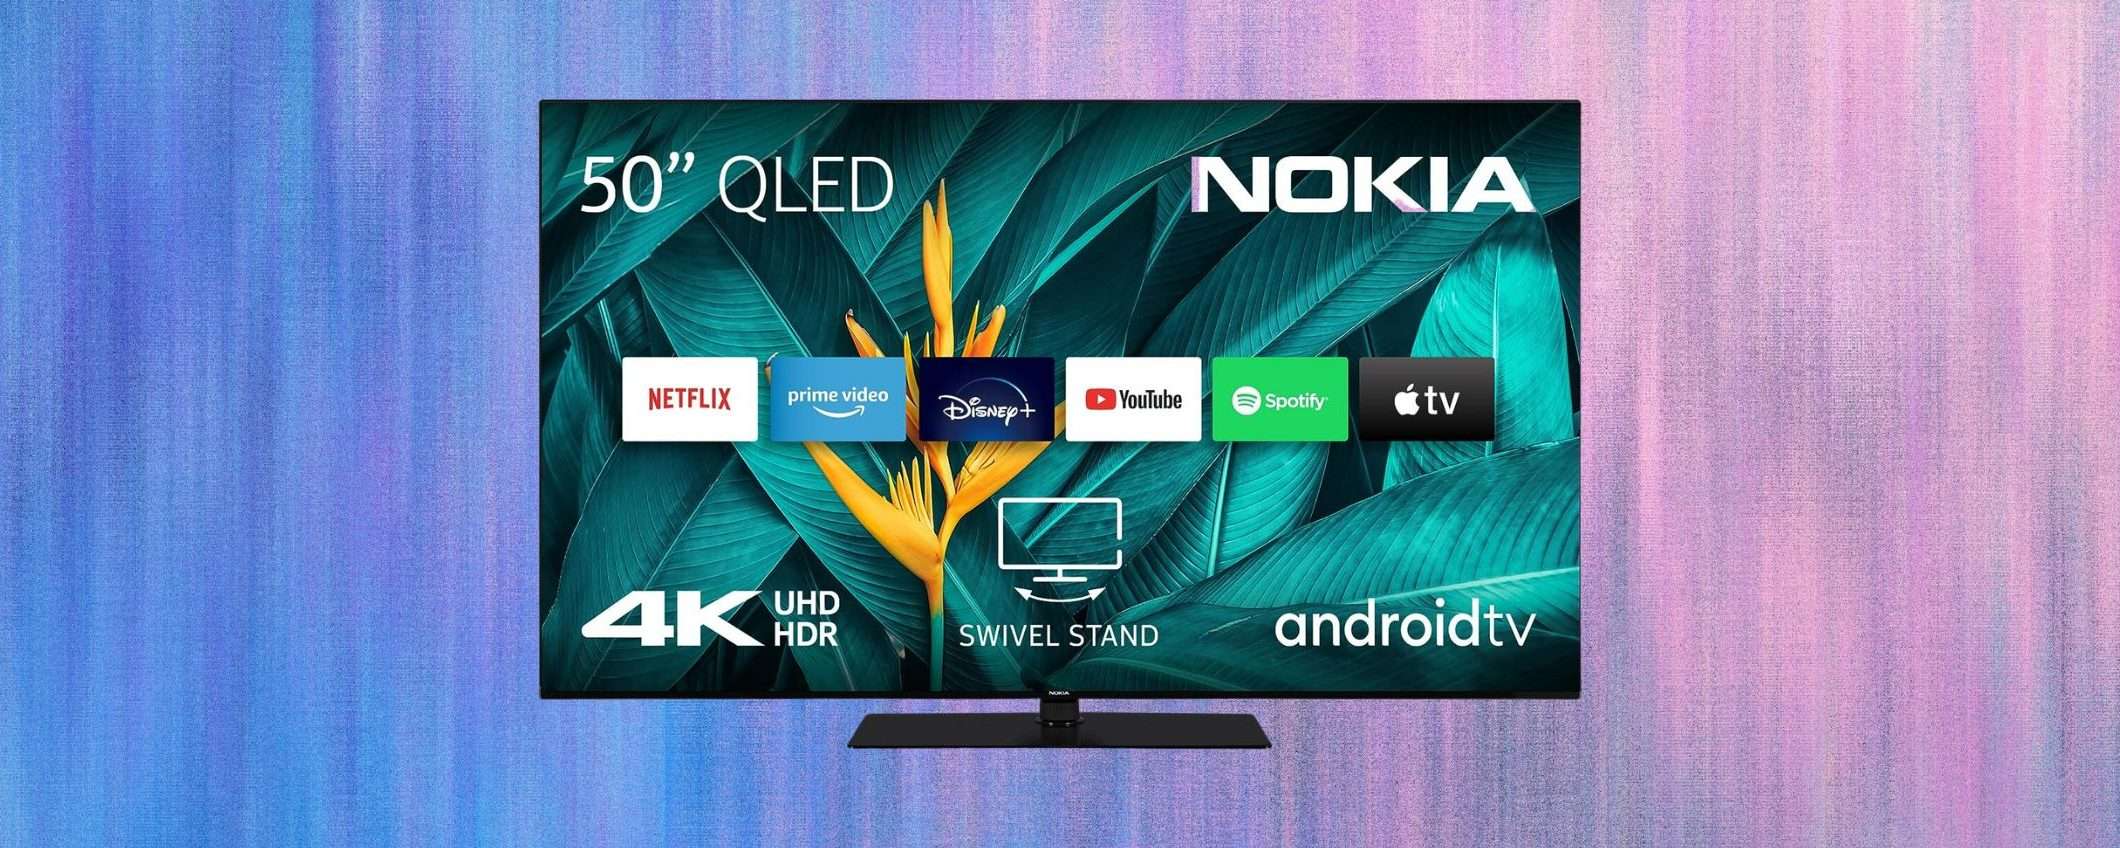 Smart TV Nokia 50 pollici: che PREZZO su Amazon (-20%)